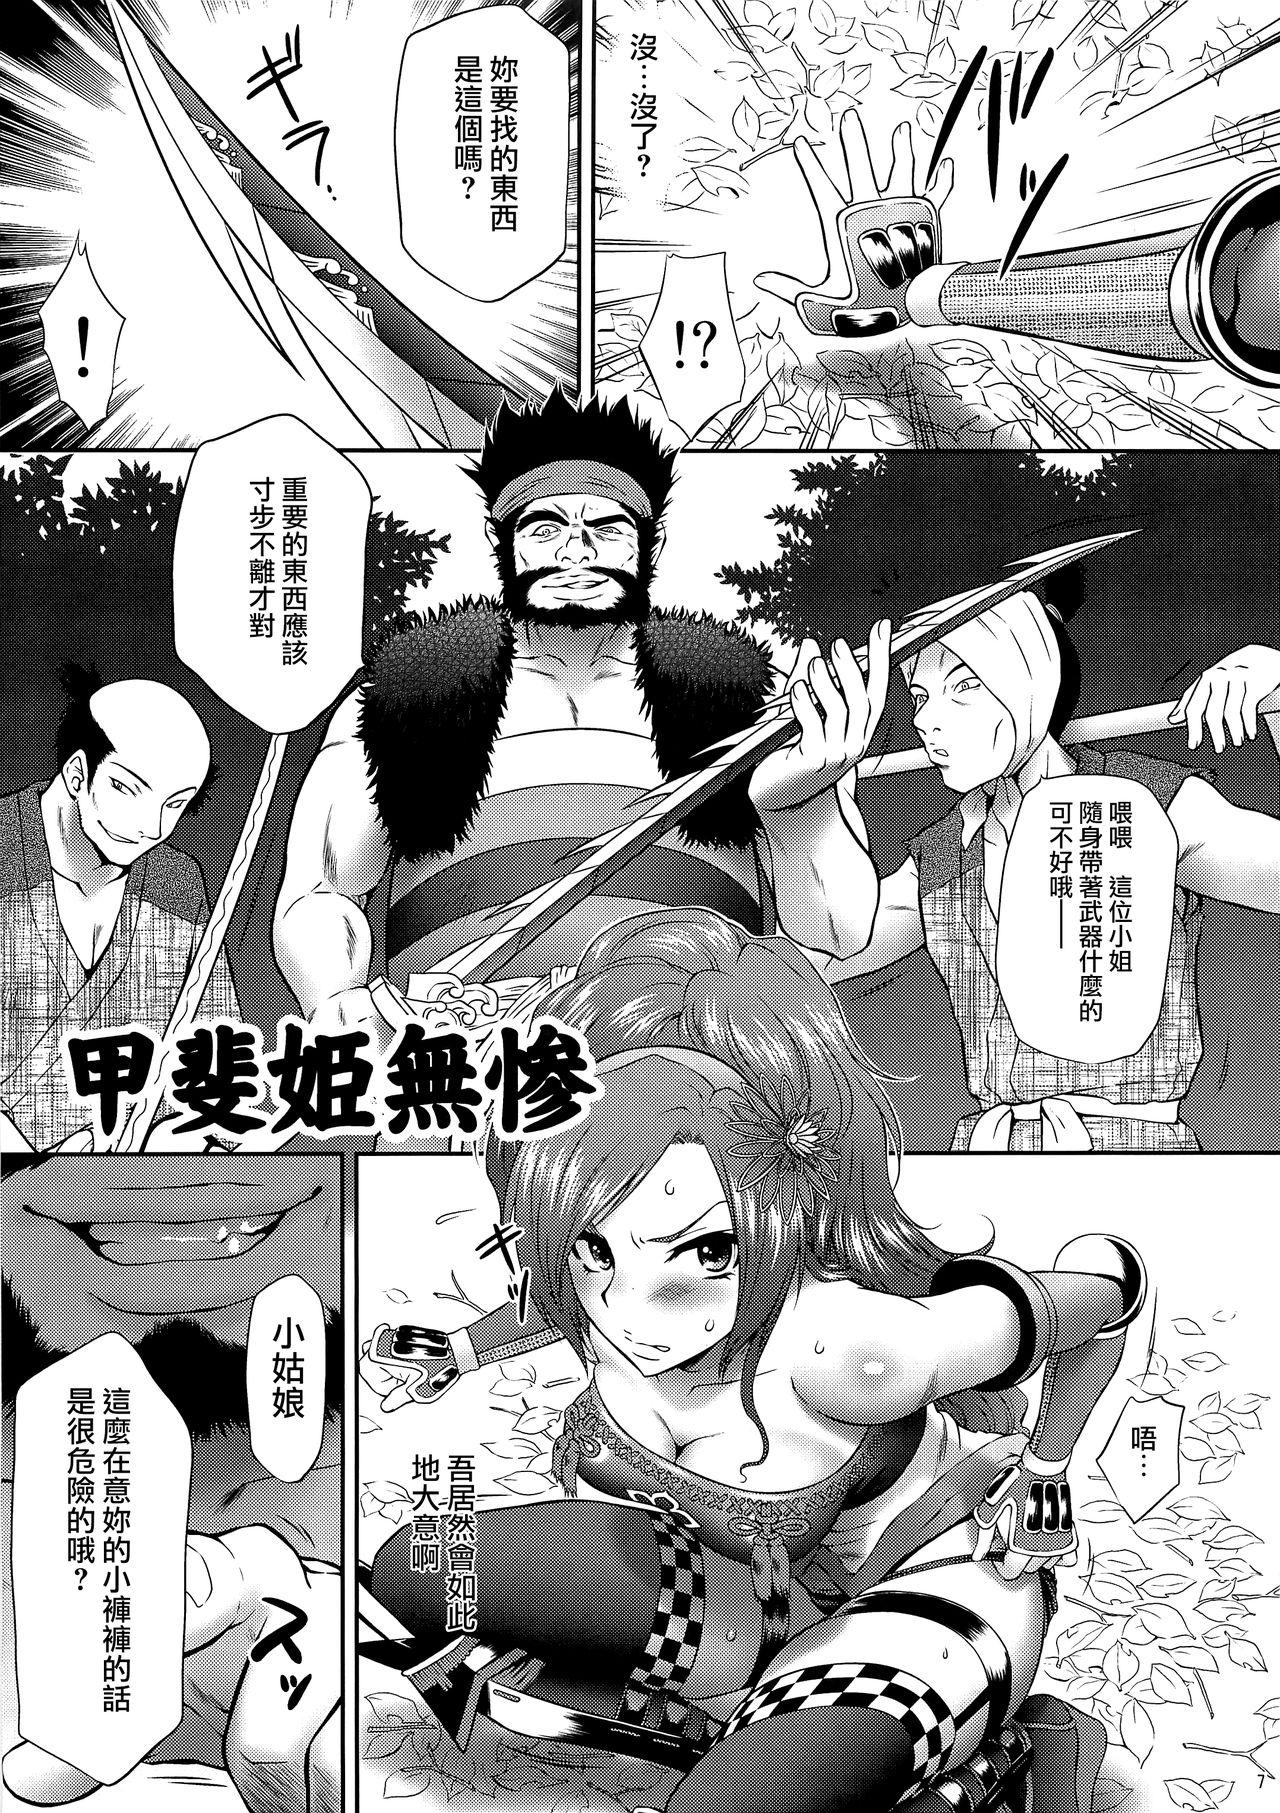 Paja Kaihime Muzan - Samurai warriors Cartoon - Page 6